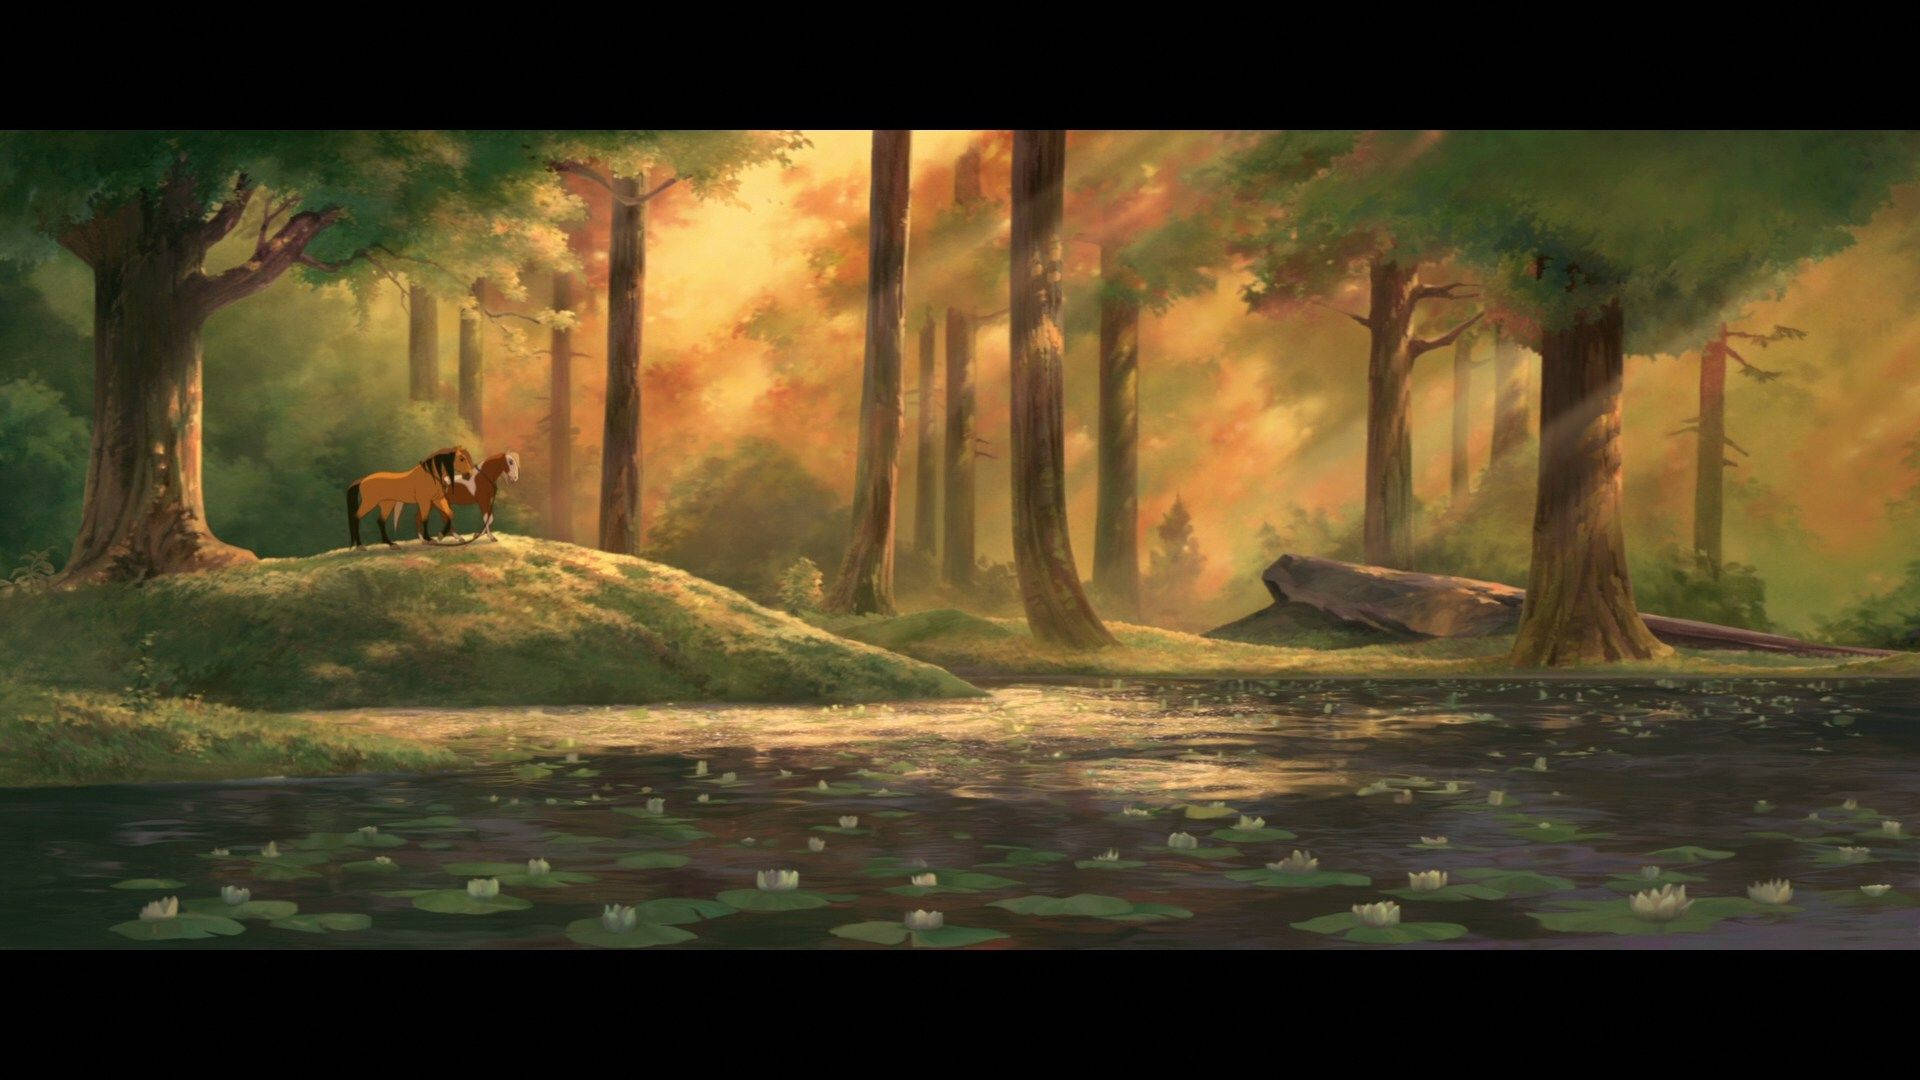 Forest Scene In Spirit Stallion Of The Cimarron Wallpaper